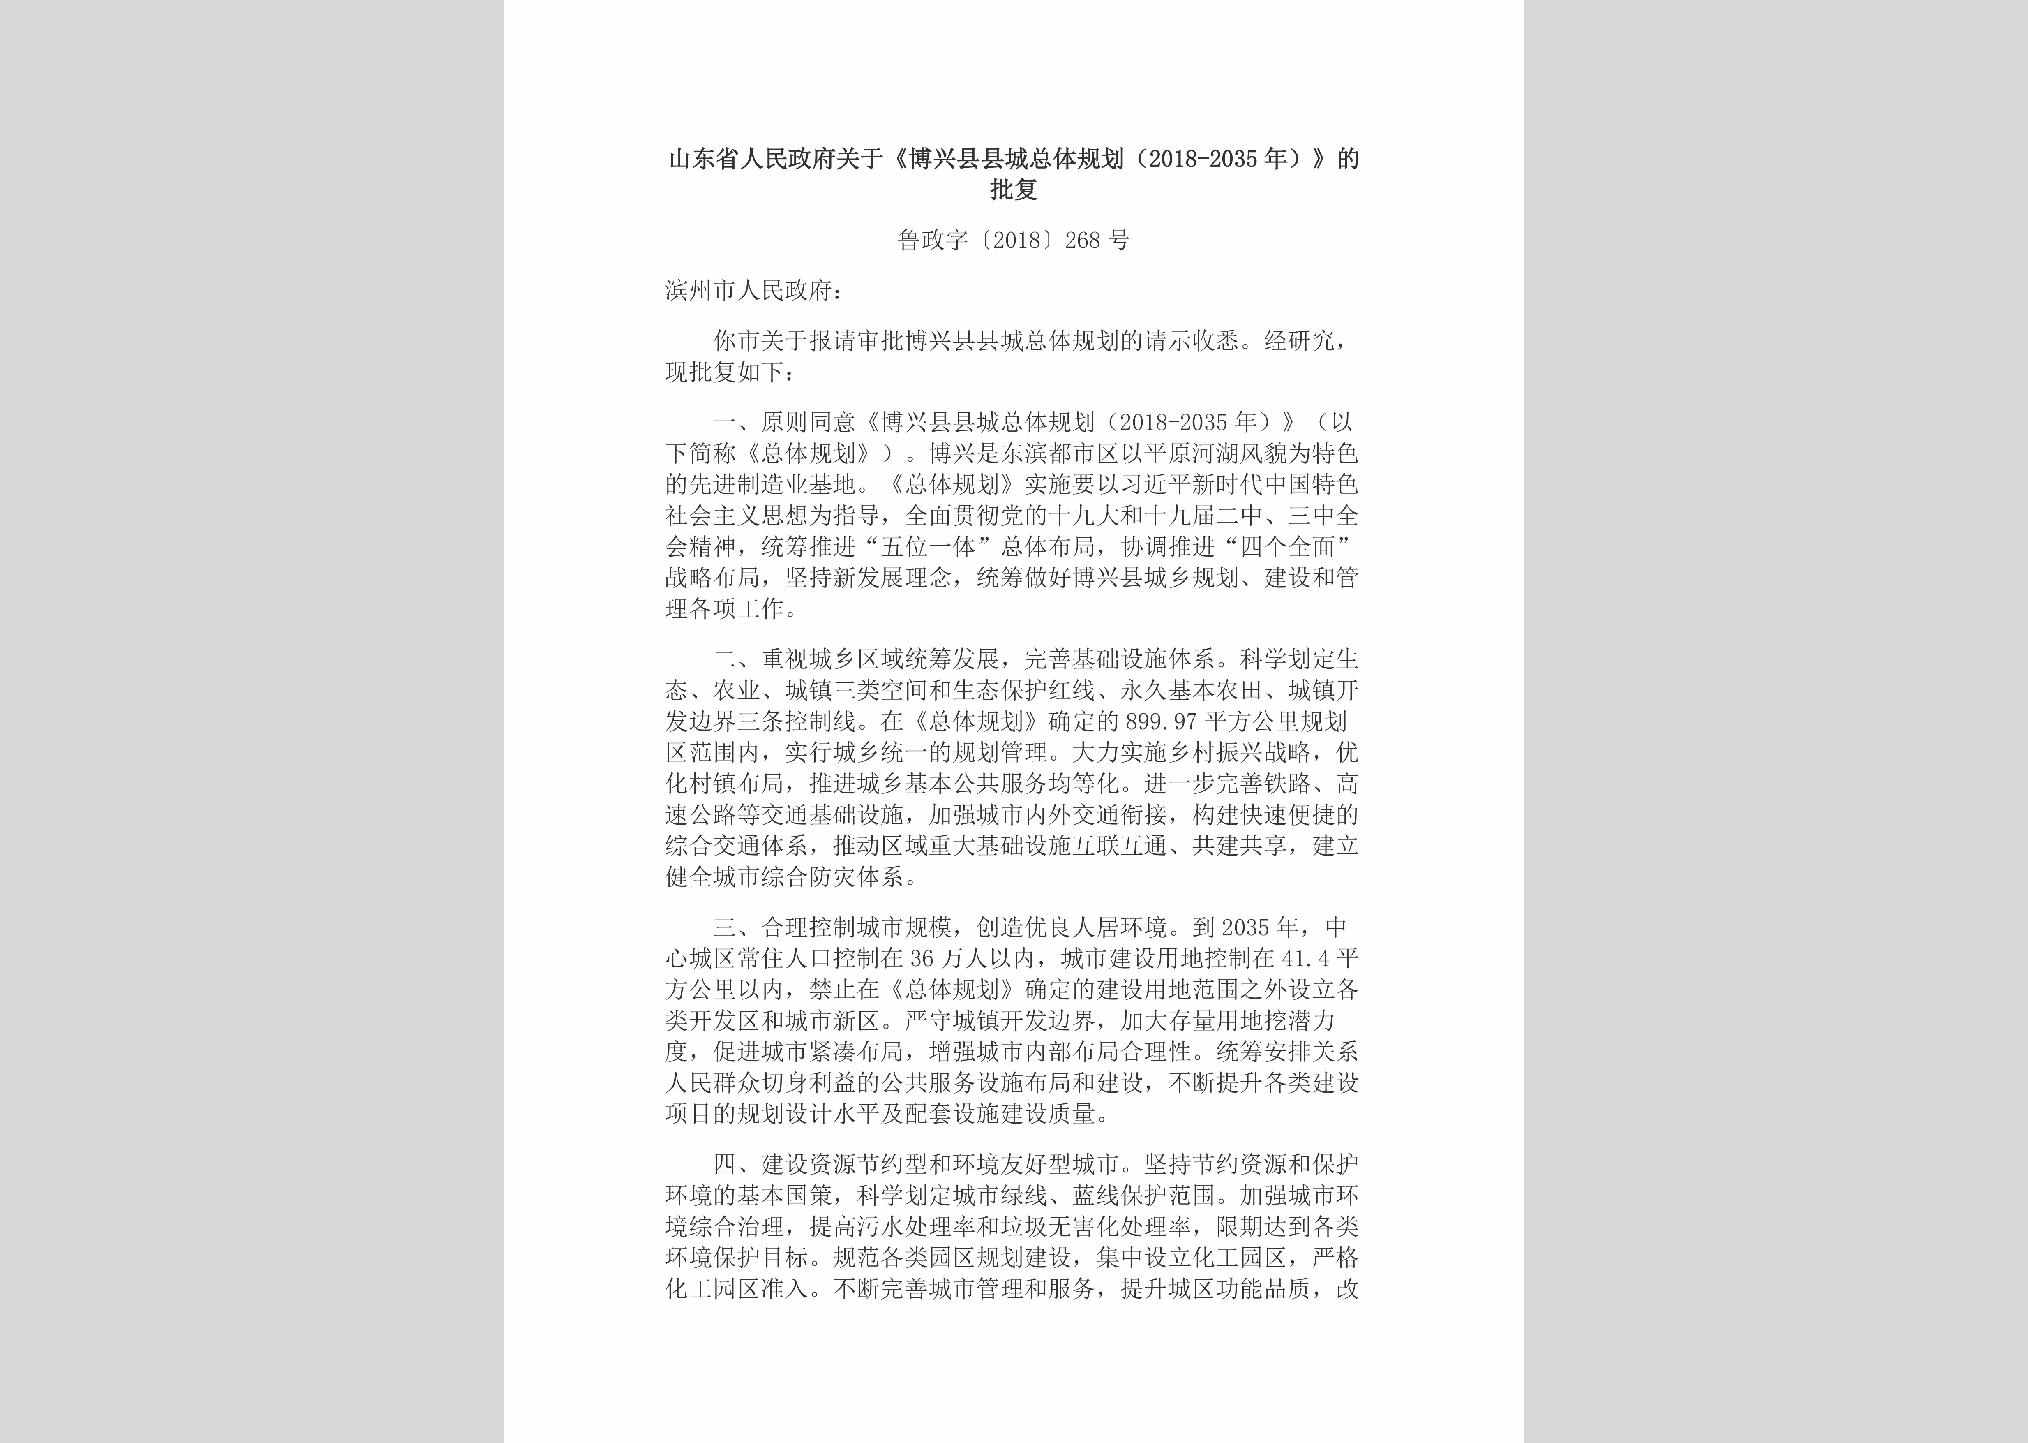 鲁政字[2018]268号：山东省人民政府关于《博兴县县城总体规划（2018-2035年）》的批复